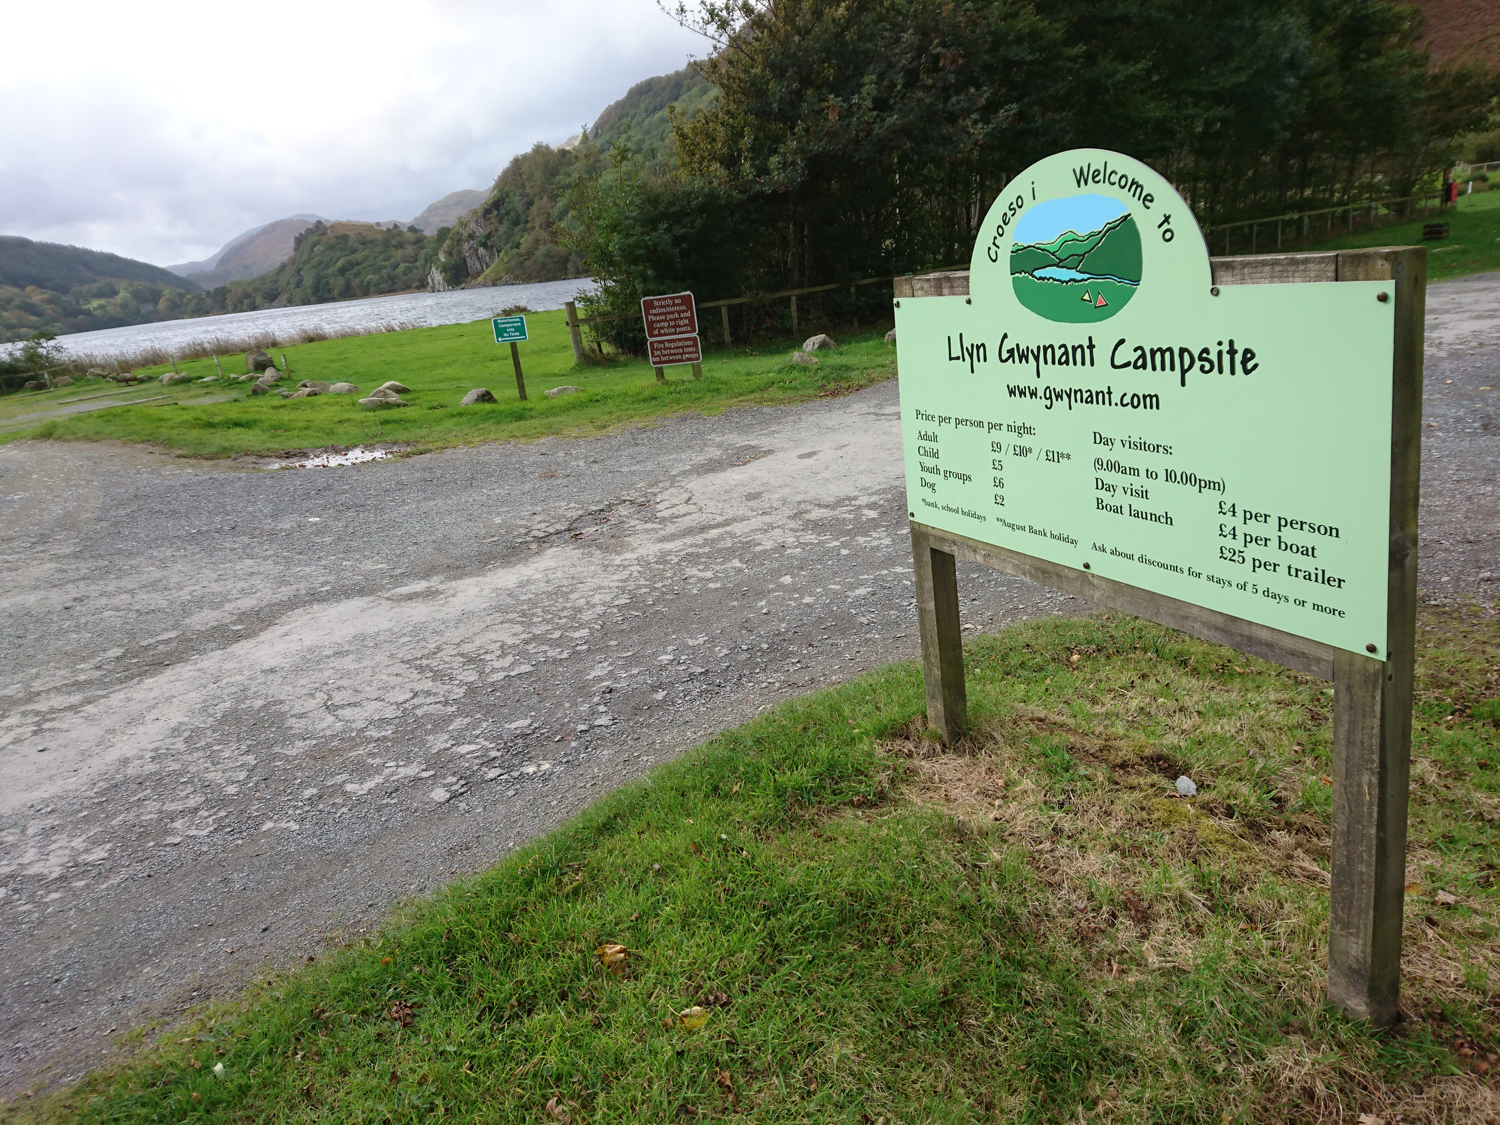 Llyn Gwanant Campsite in Snowdonia